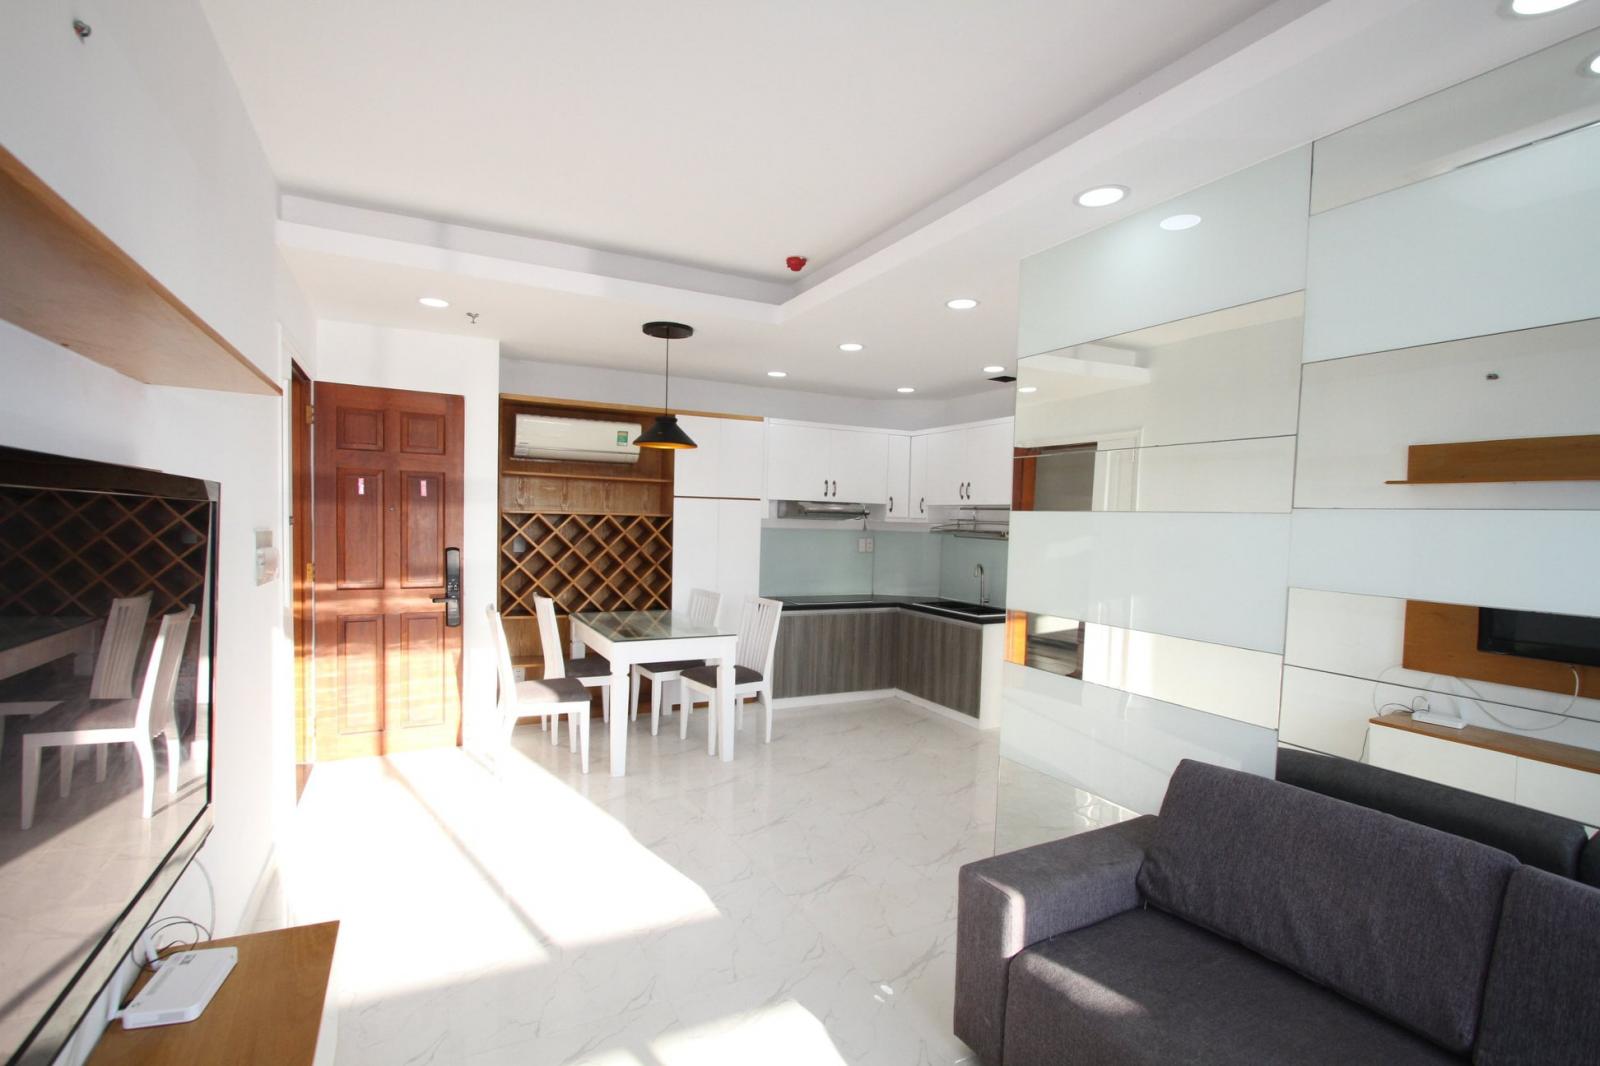 Cho thuê căn hộ 91 Phạm Văn Hai, 3 phòng ngủ, nội thất đầy đủ, 15 triệu/tháng-duy nhất 1 căn giá rẻ. LH 0932 192 028-Ms.Mai